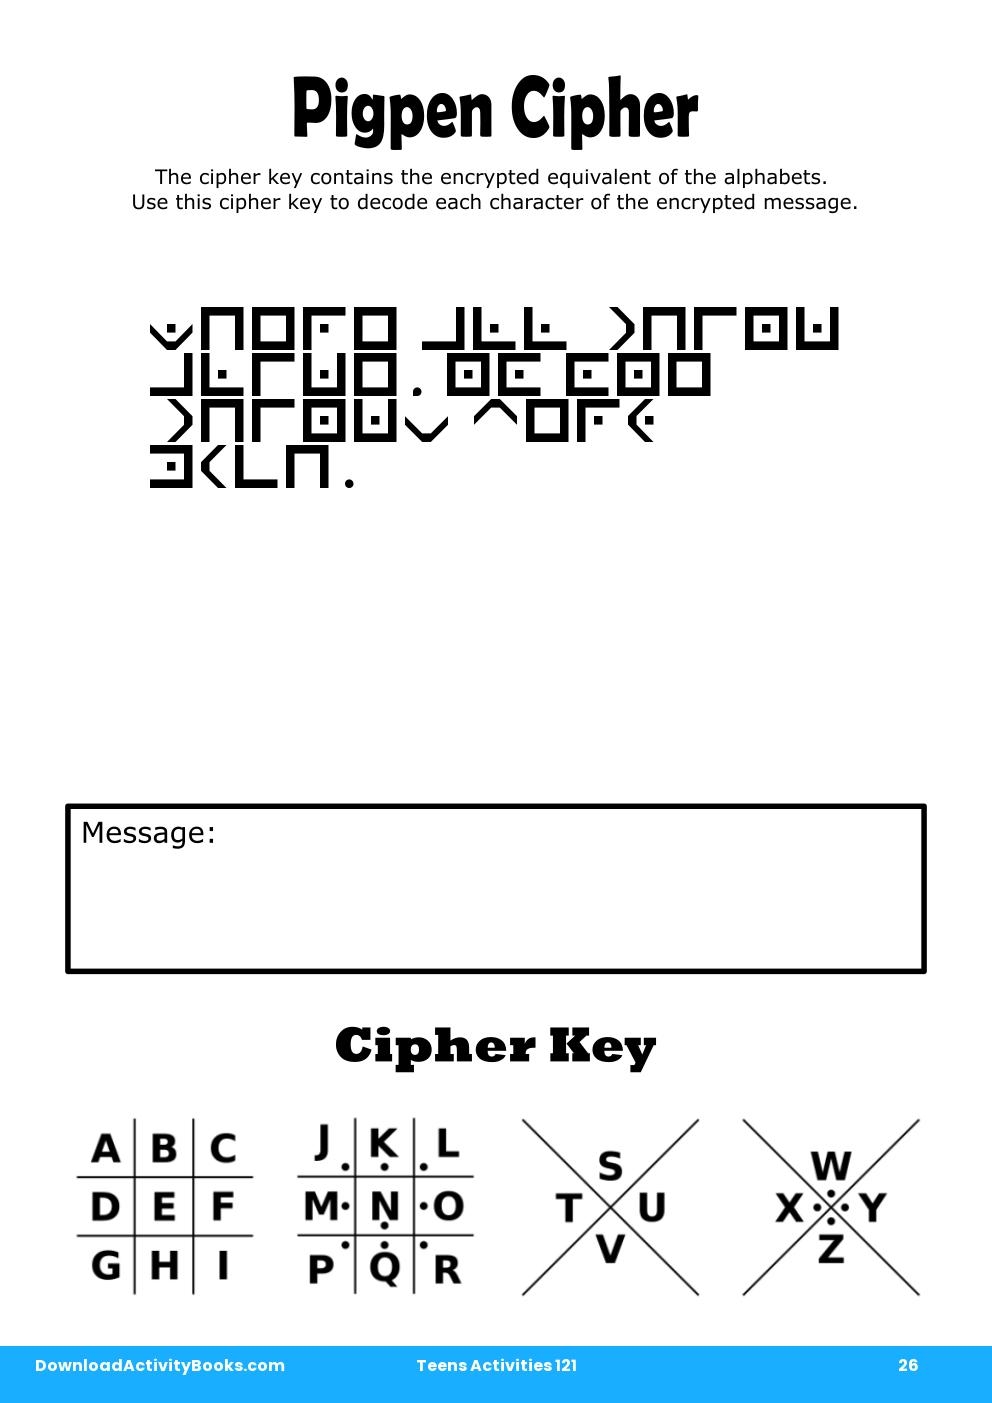 Pigpen Cipher in Teens Activities 121